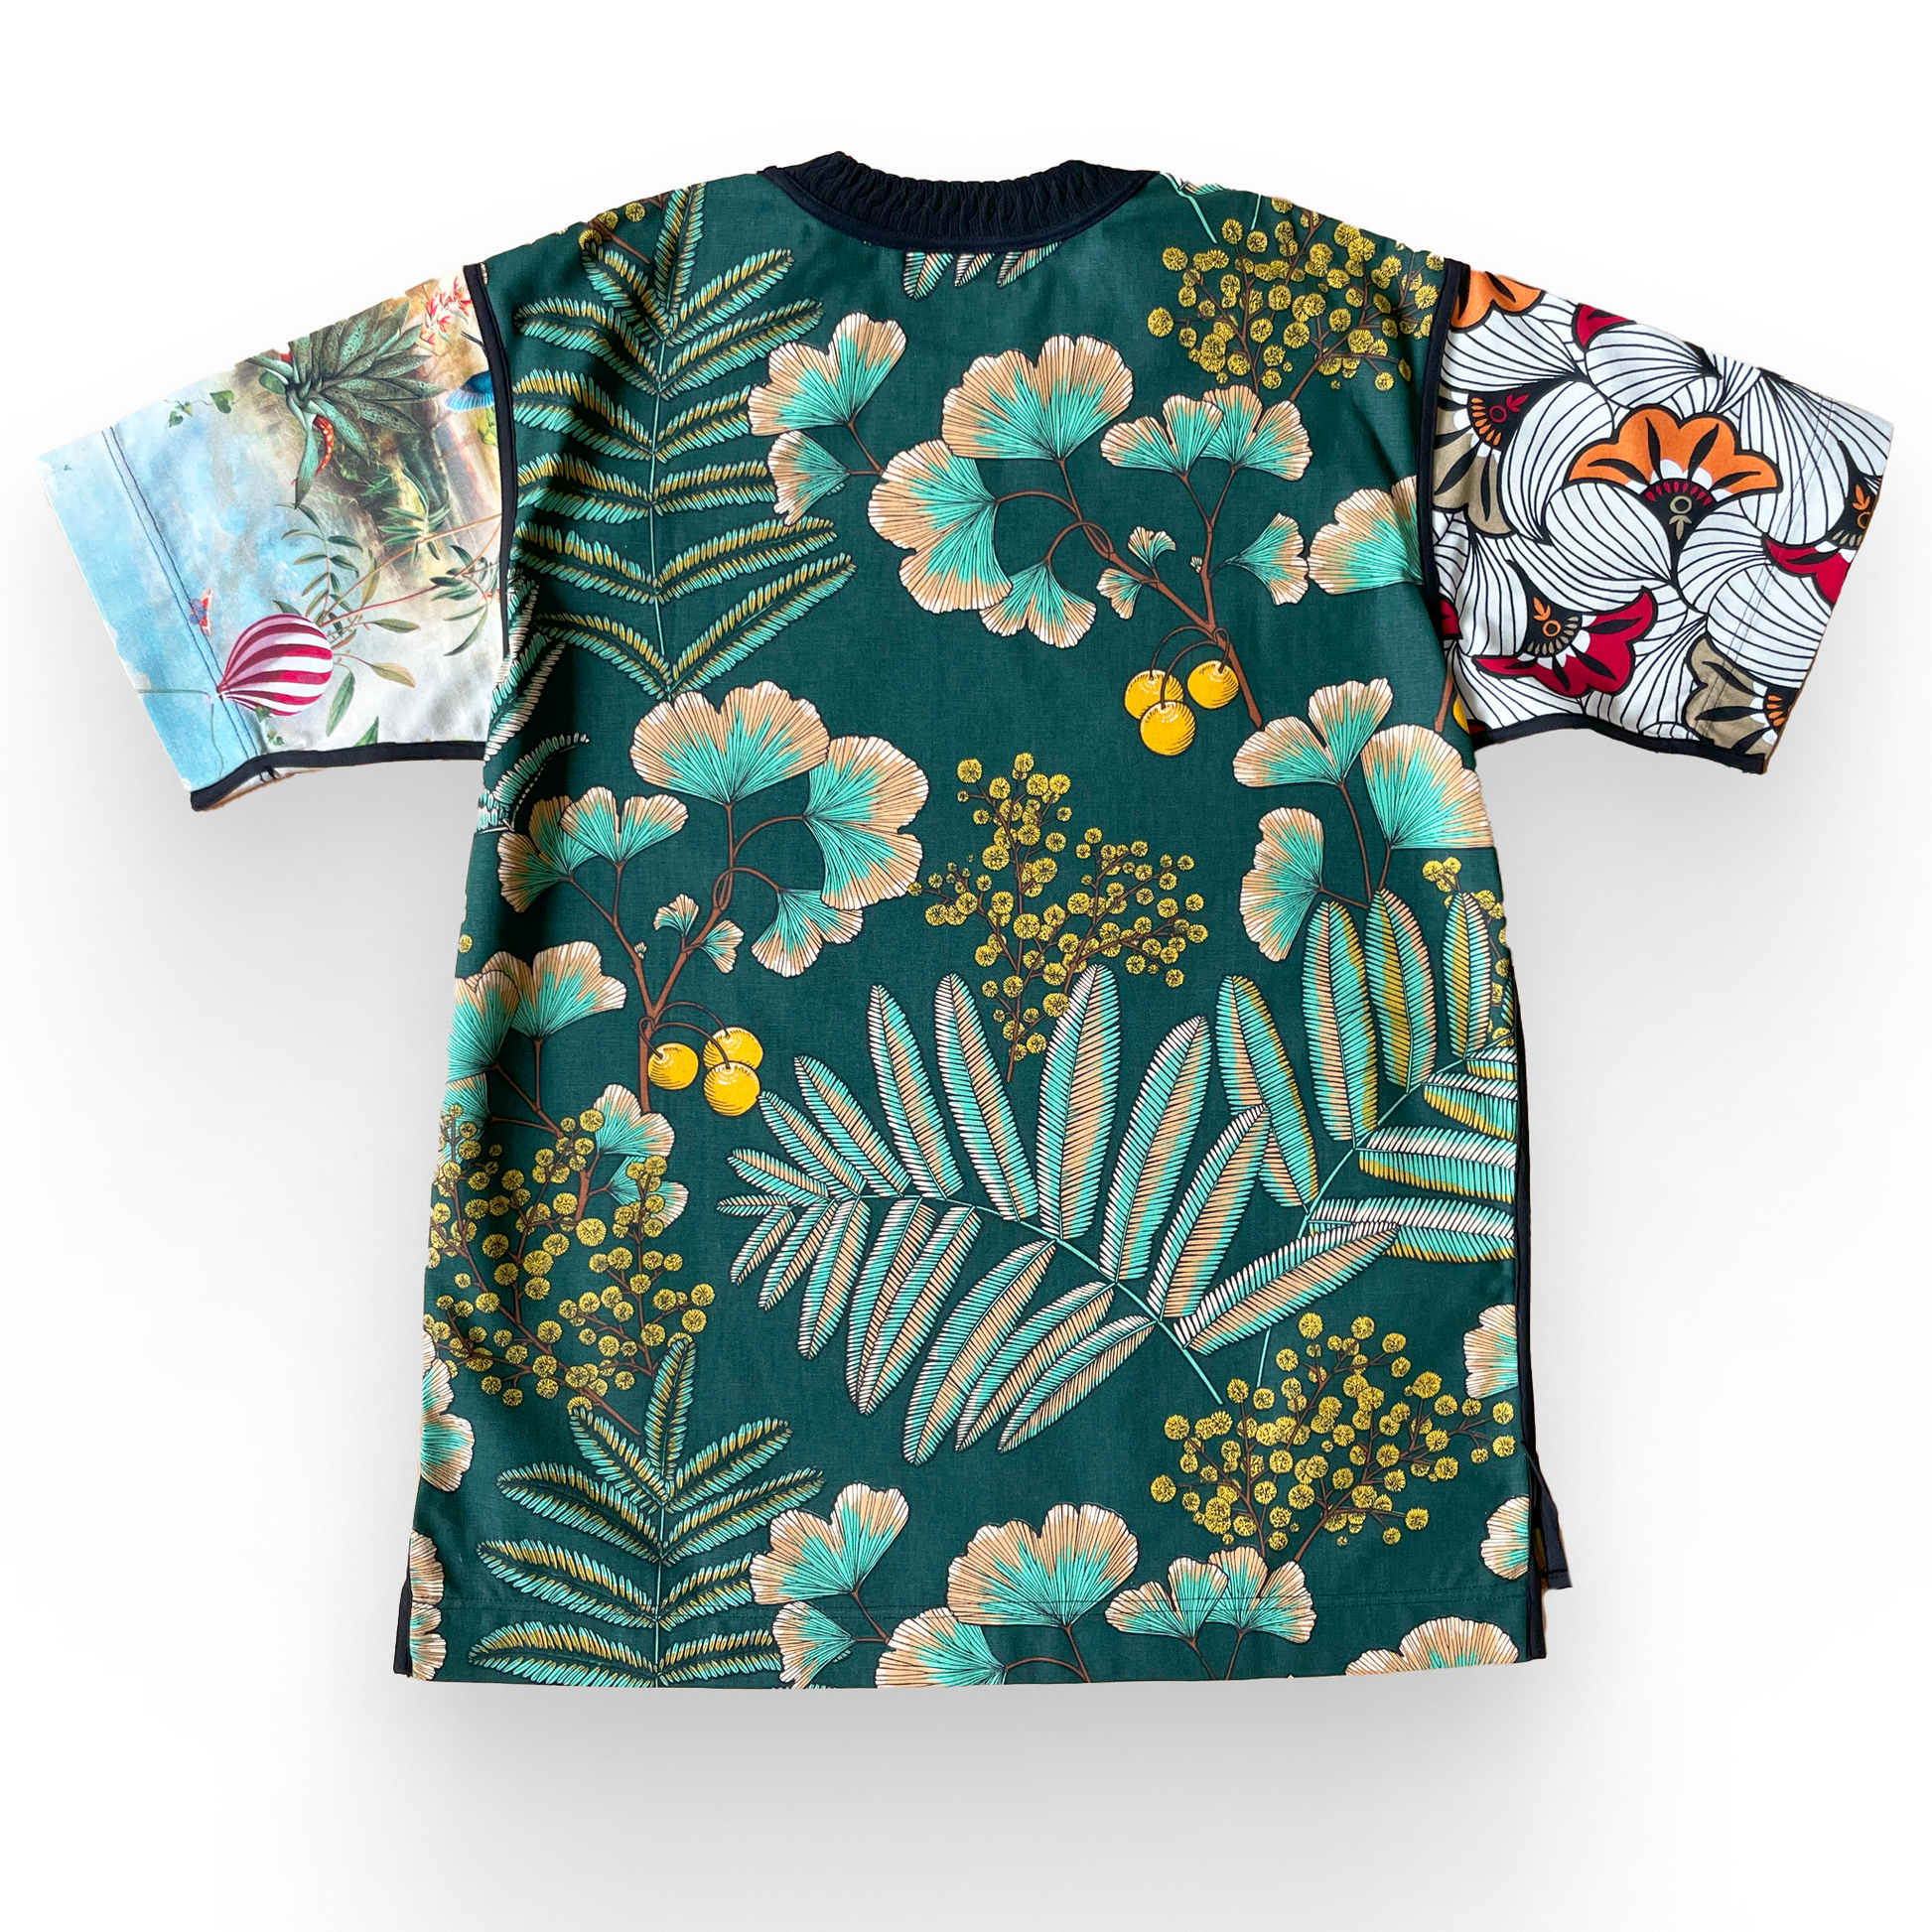 T-shirt BISENGO JP MIKA x XULY-BËT - Numéroté 14/65 - Taille S - Wearable-art inspiré du tableau "Tala Mabina ya Mboka na Biso" (Regarde la danse de notre pays) de la série de toiles BISENGO de JP MIKA.